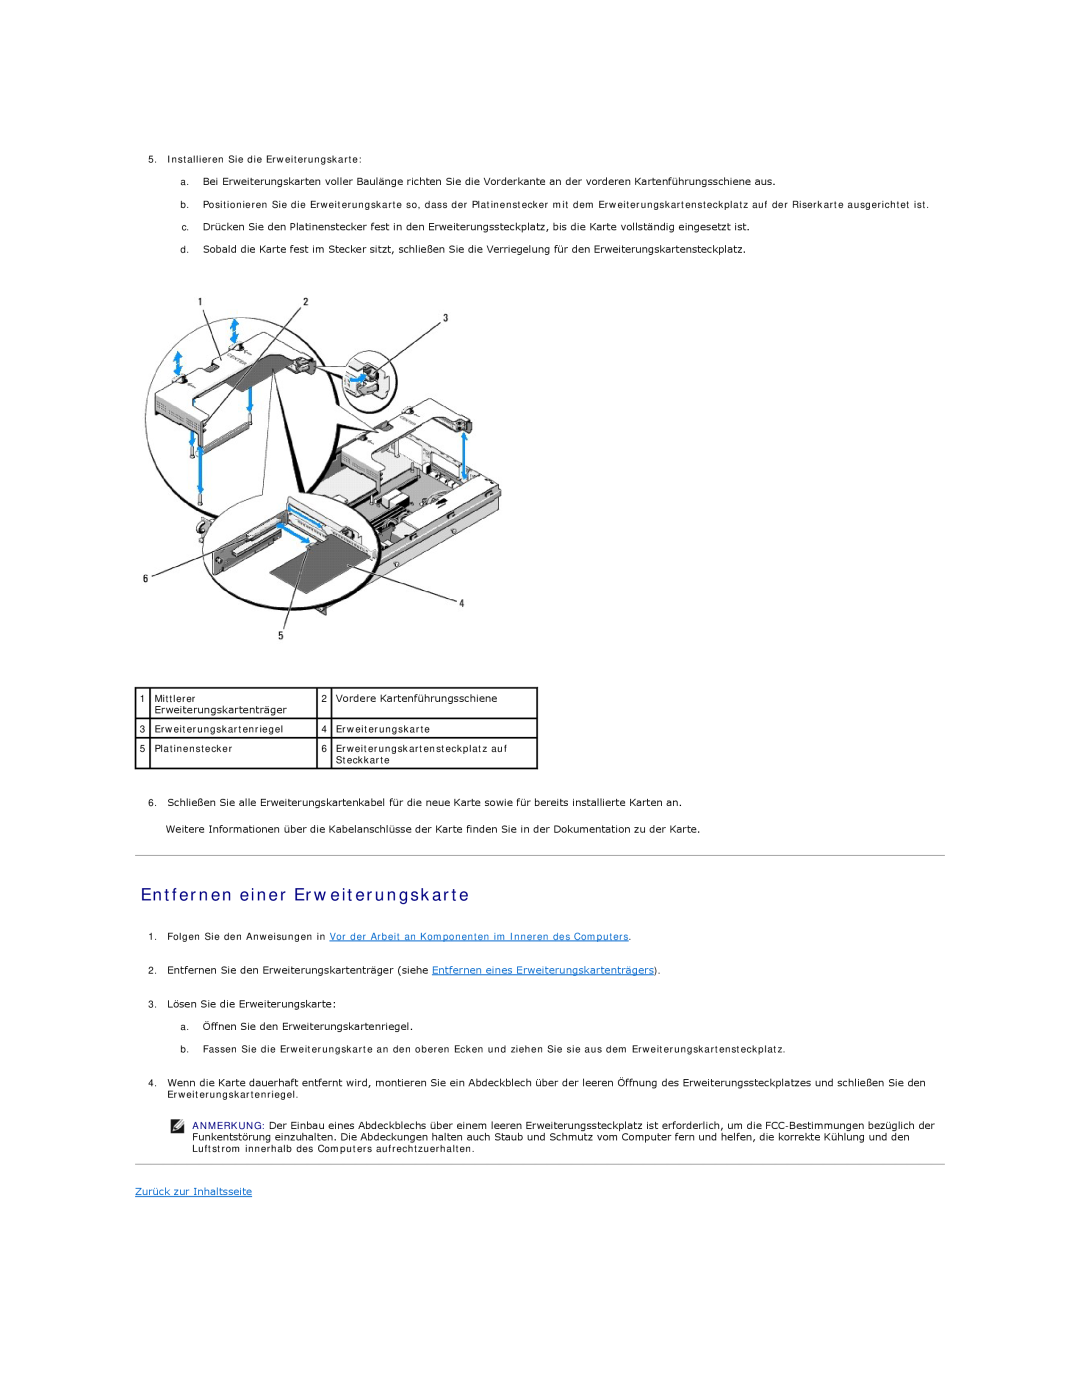 Dell 5400 manual Entfernen einer Erweiterungskarte, Zurück zur Inhaltsseite 